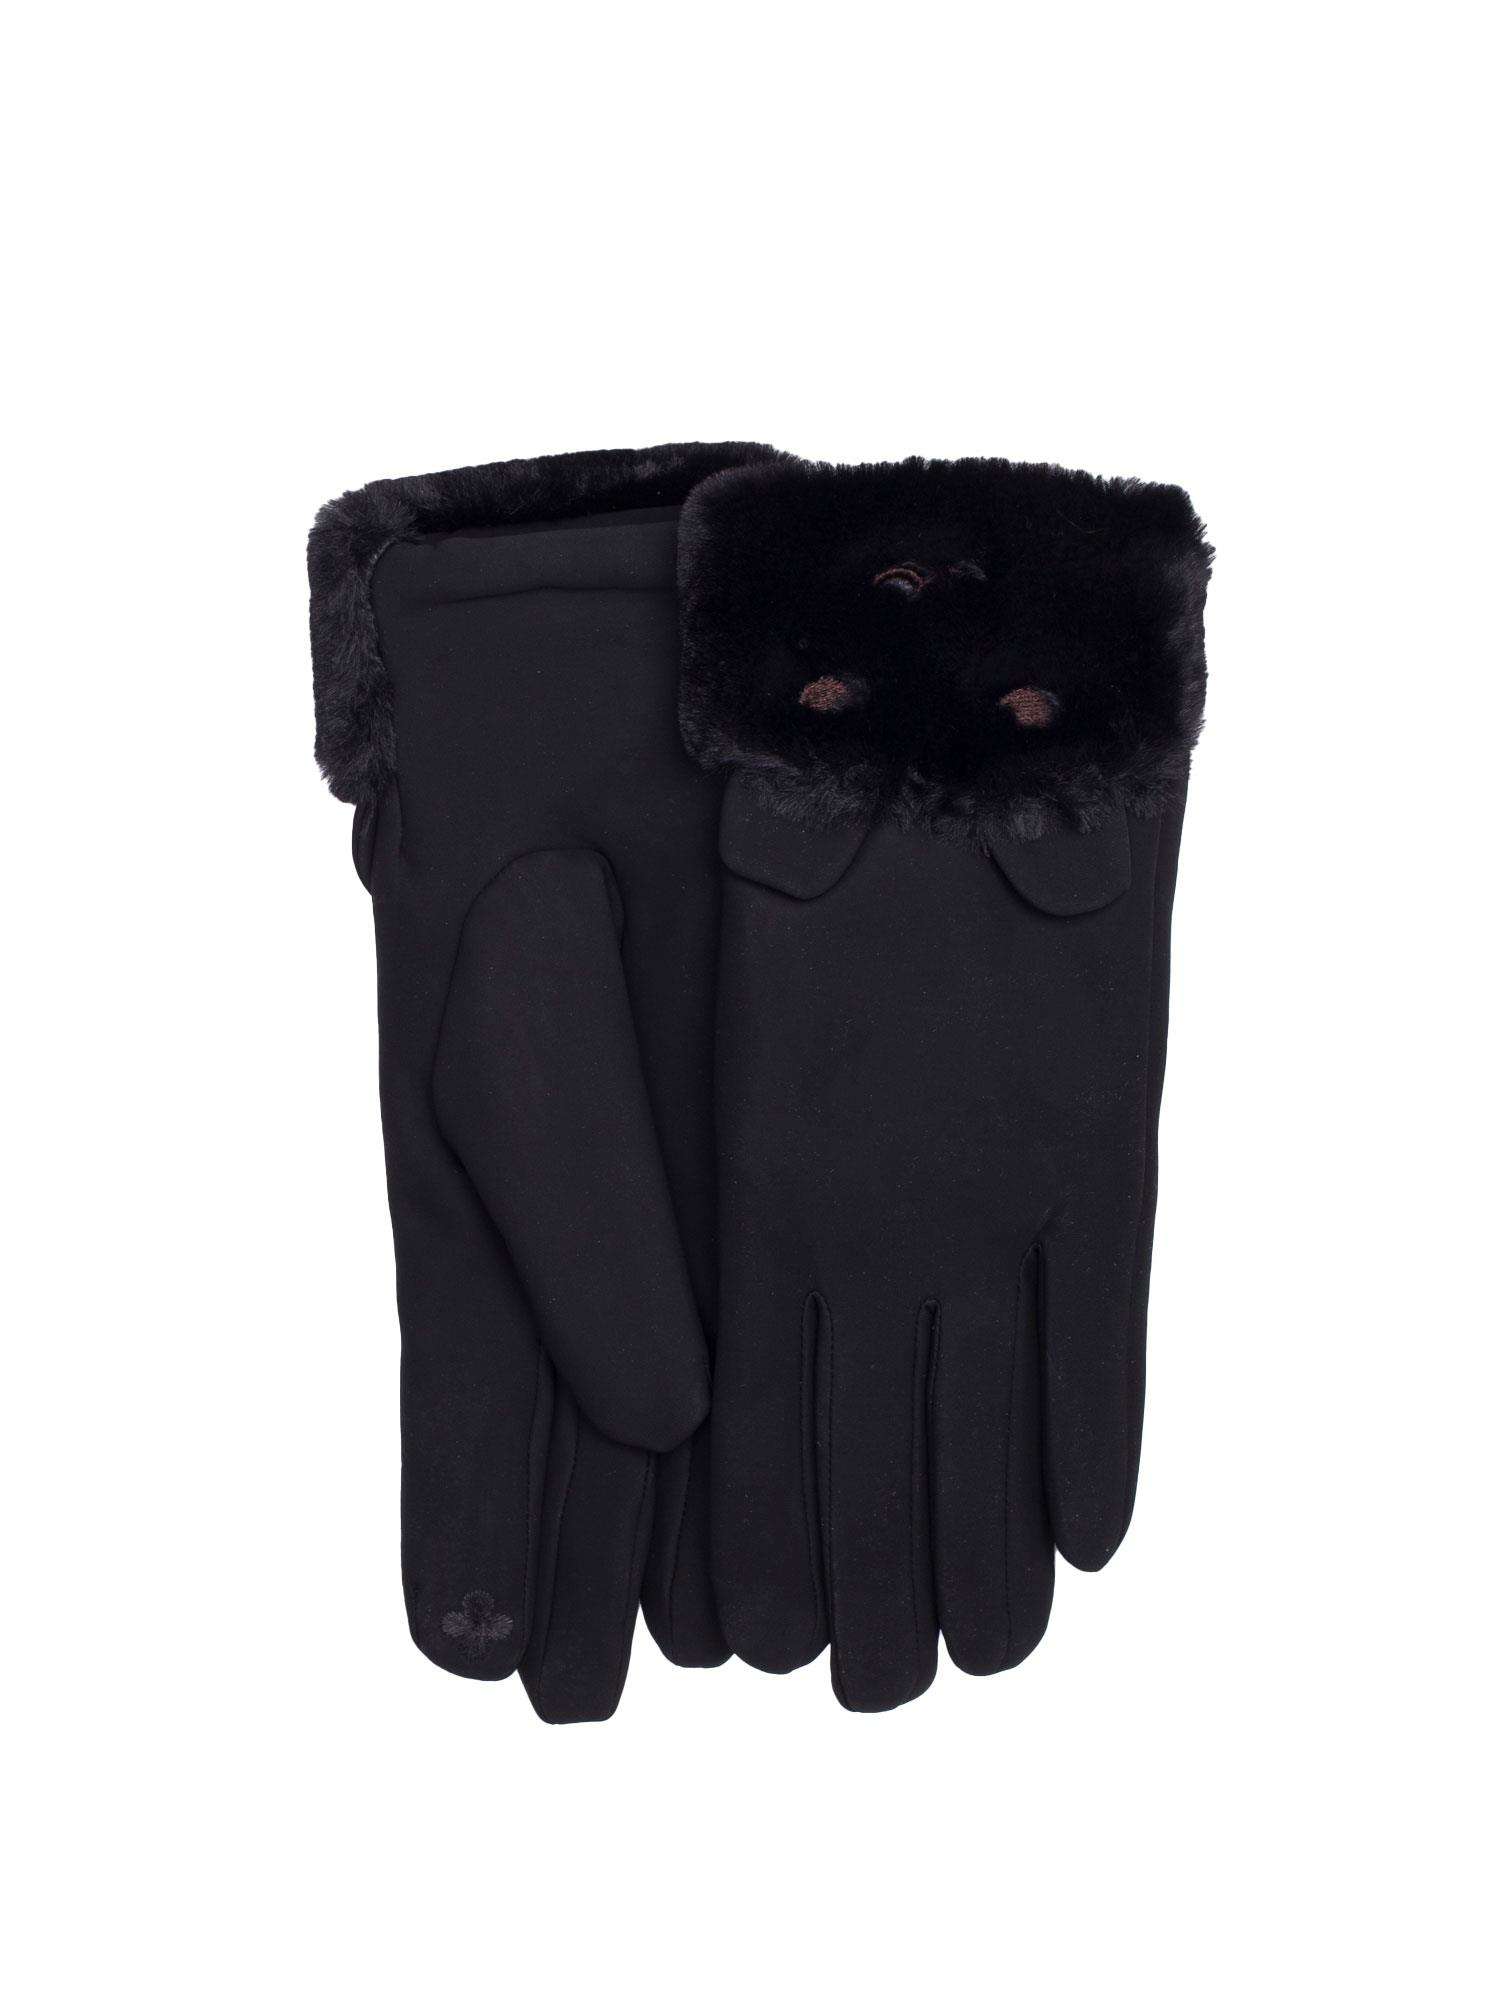 Dámske čierne rukavice - S